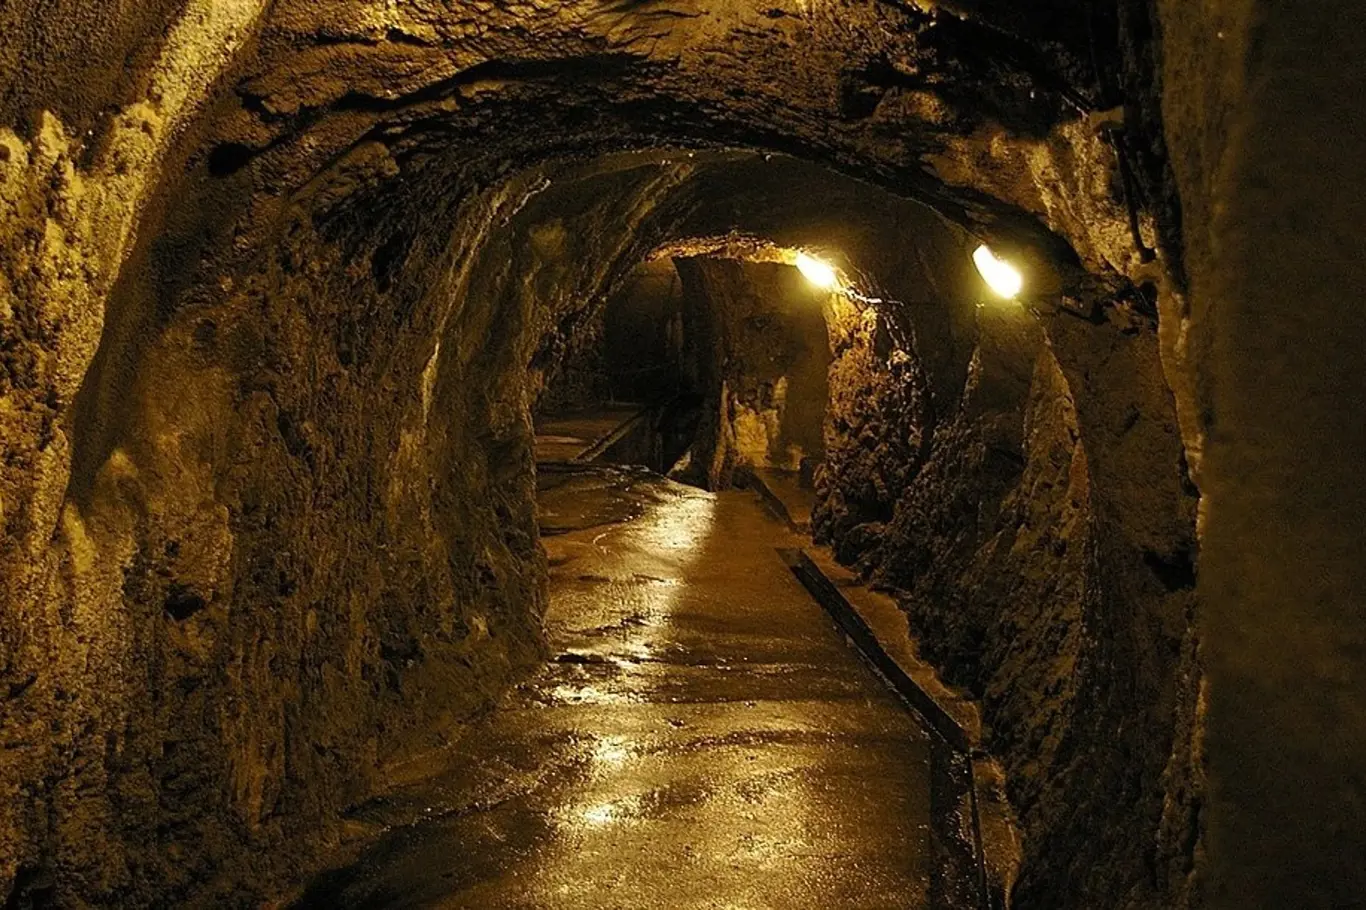 Jihlavské podzemí je druhé nejrozsáhlejší podzemí pod lidskou zástavbou v republice